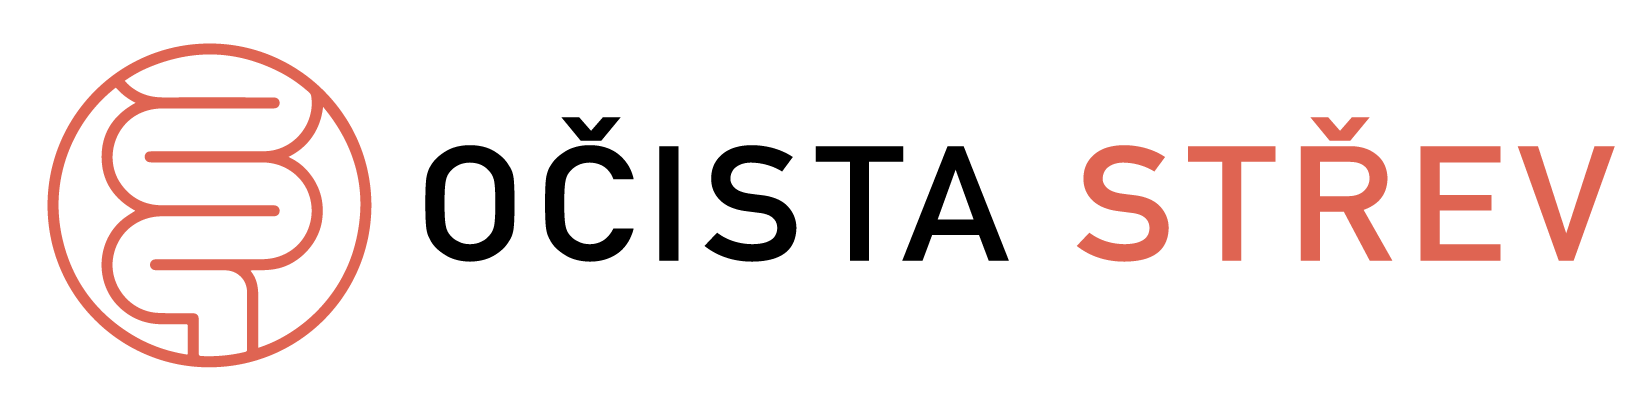 logo očista střev frýdek místek